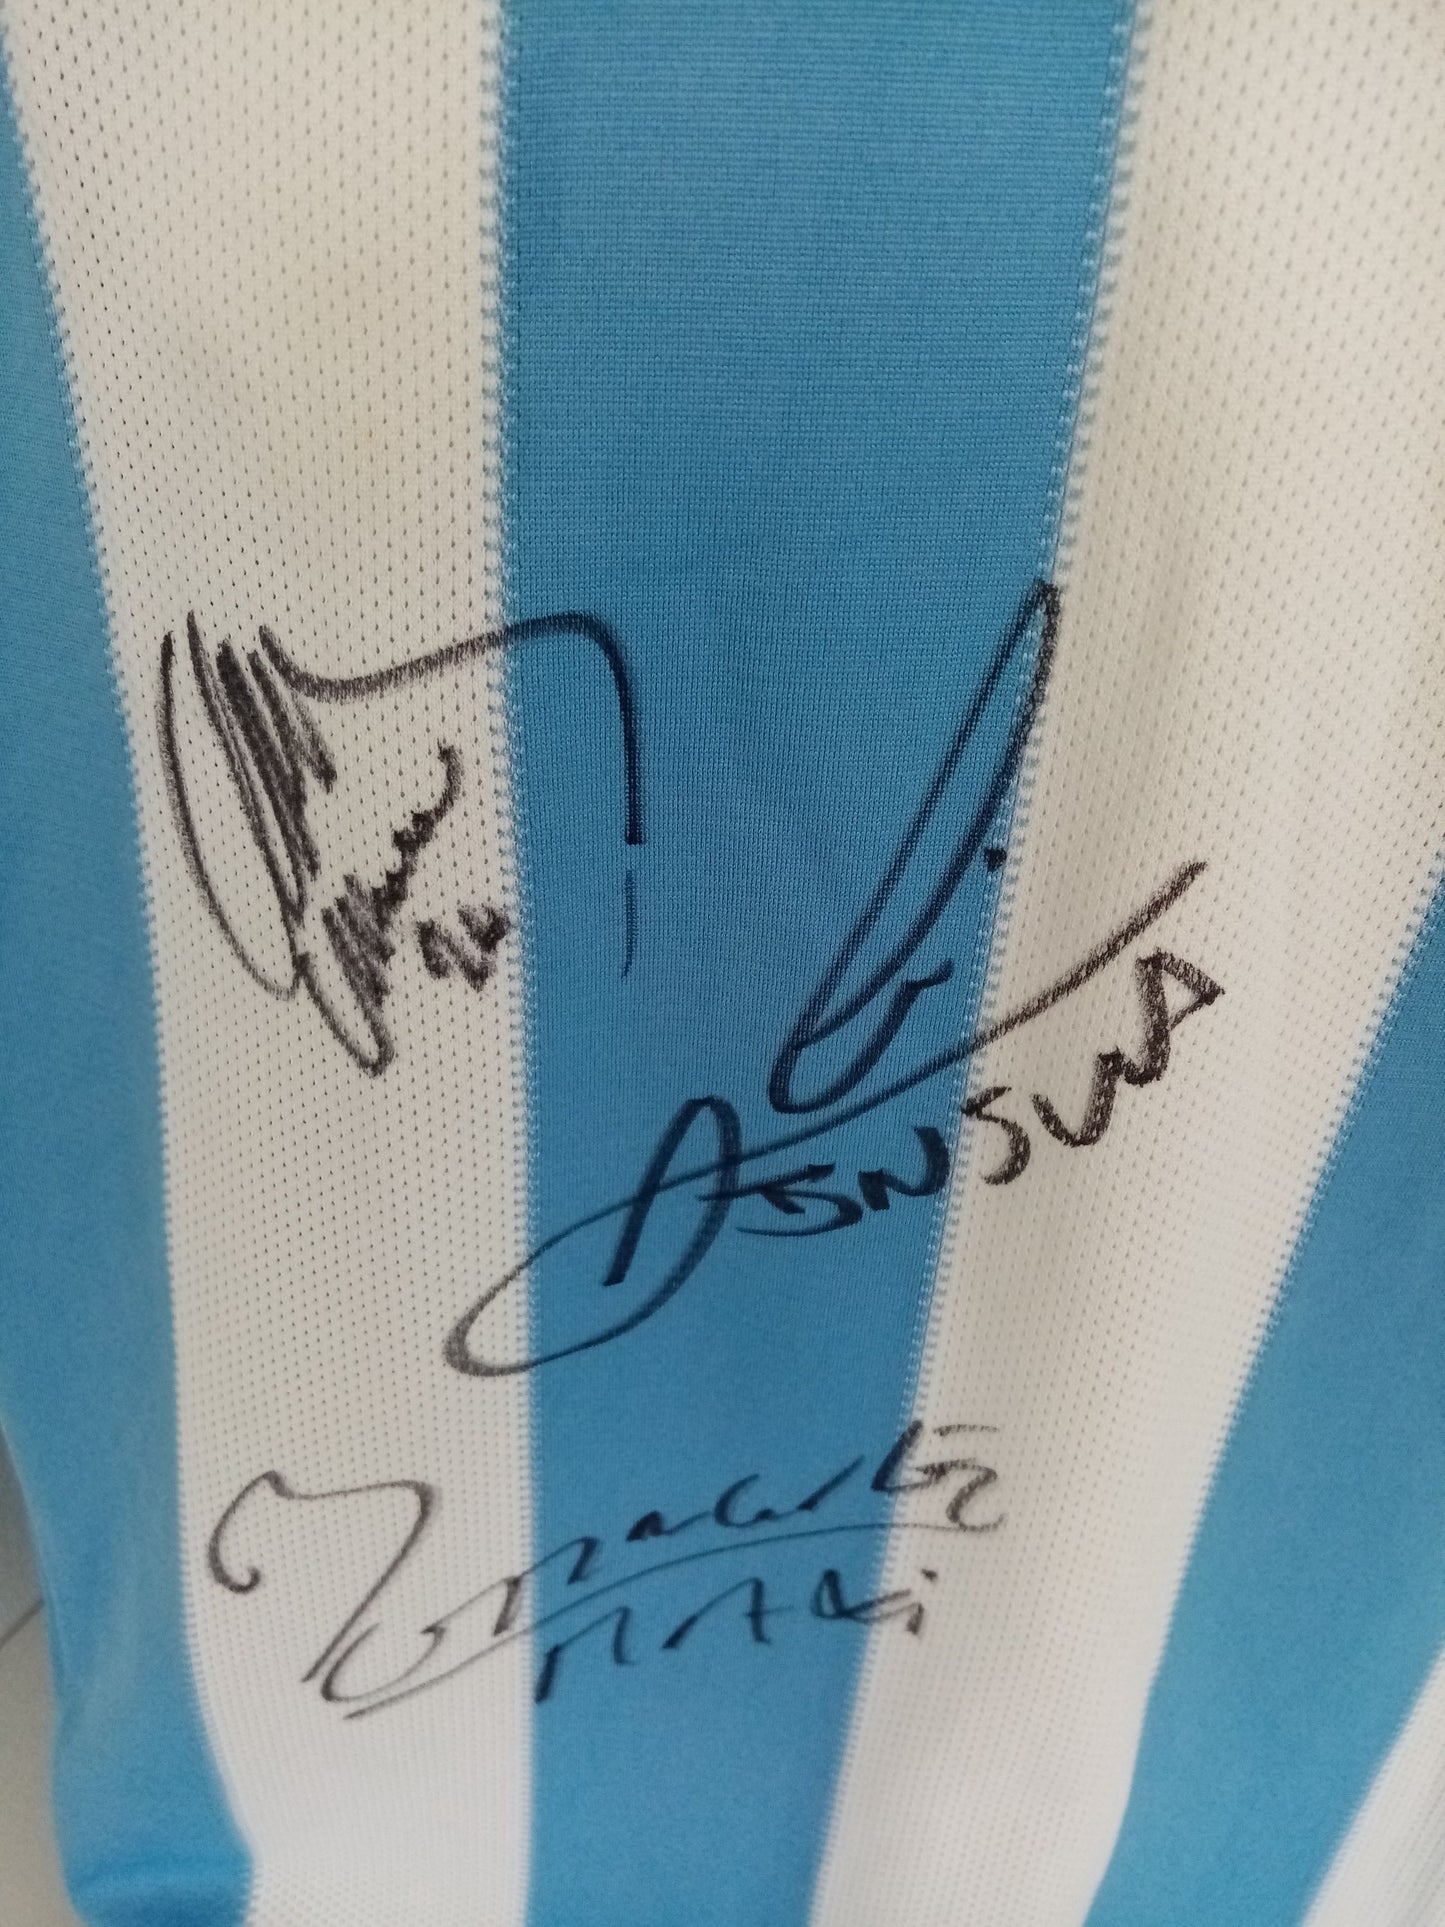 Argentinien Trikot Maxi Rodriguez und Emiliano Insua signiert Adidas COA L